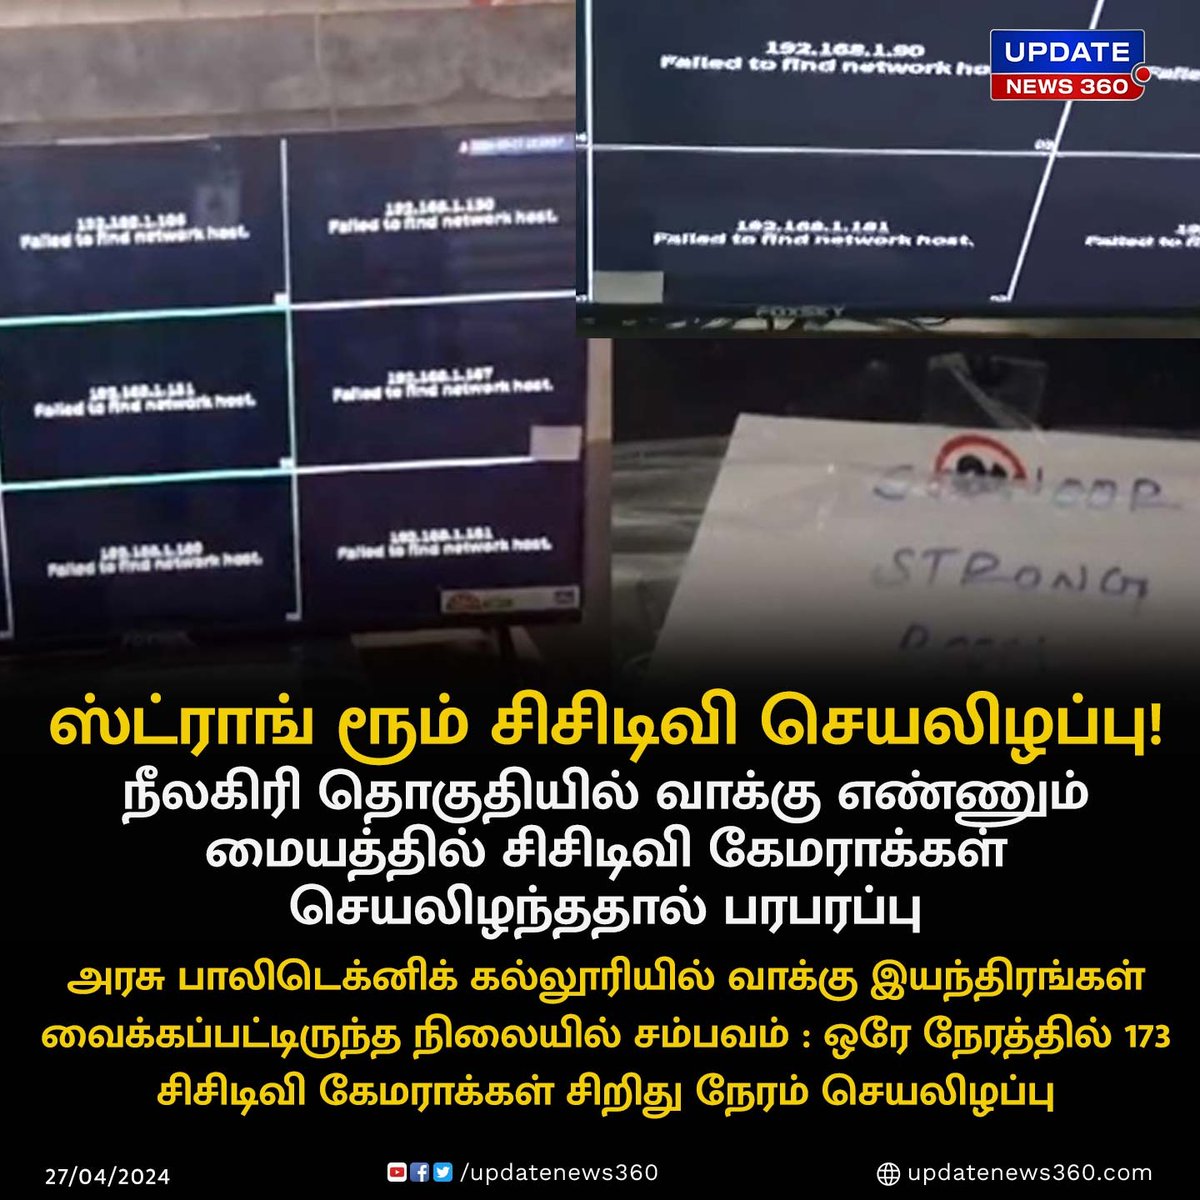 நீலகிரி தொகுதியில் வாக்கு எண்ணும் மையத்தில் சிசிடிவி கேமராக்கள் செயலிழந்ததால் பரபரப்பு!!

#UpdateNews | #Nilgiris | #Election2024 | #CCTV | #LokSabhaElection2024 | #CCTVCameras | #TamilNews | #Updatenews360